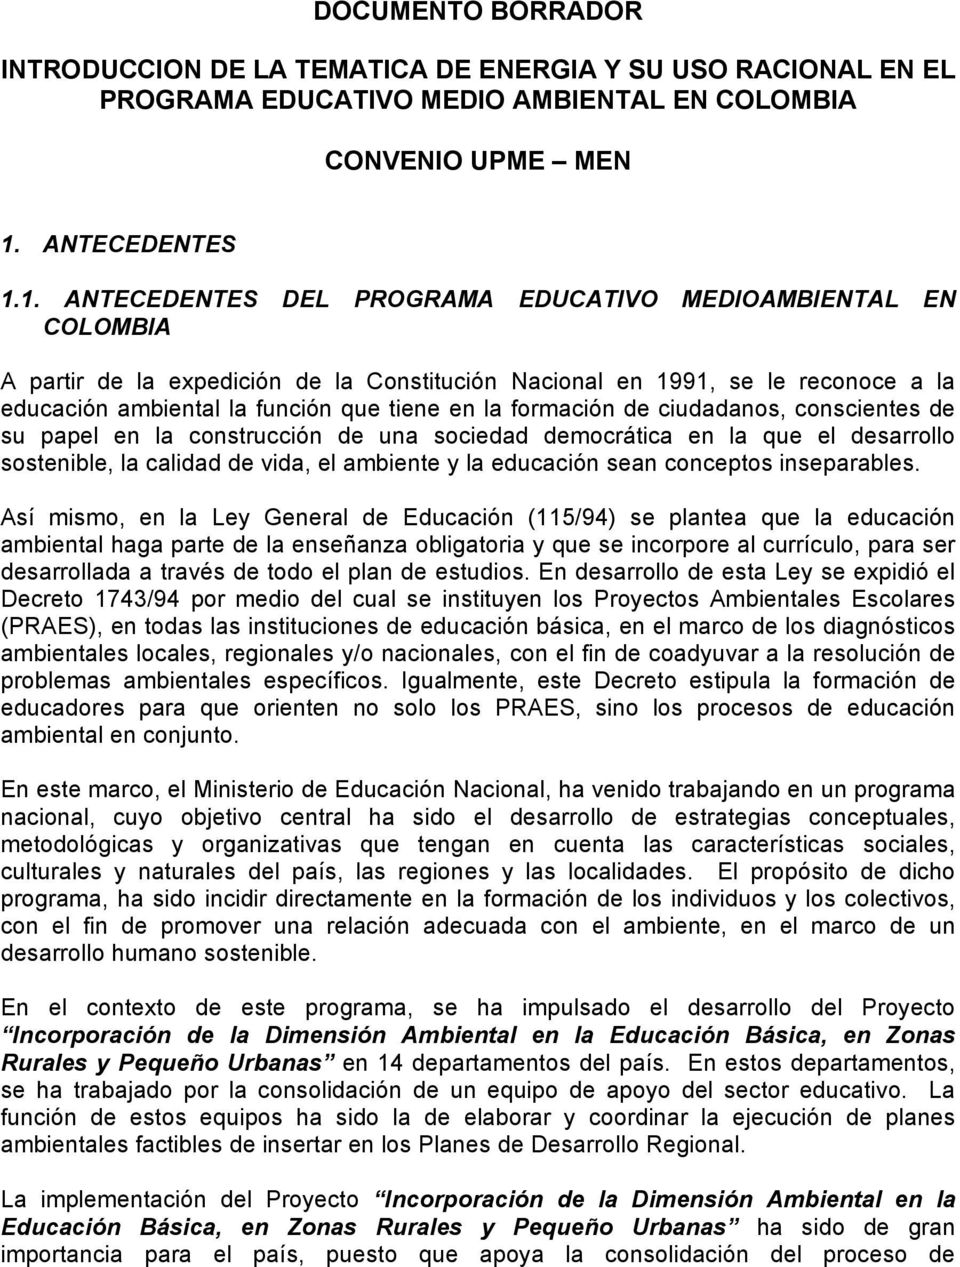 1. ANTECEDENTES DEL PROGRAMA EDUCATIVO MEDIOAMBIENTAL EN COLOMBIA A partir de la expedición de la Constitución Nacional en 1991, se le reconoce a la educación ambiental la función que tiene en la